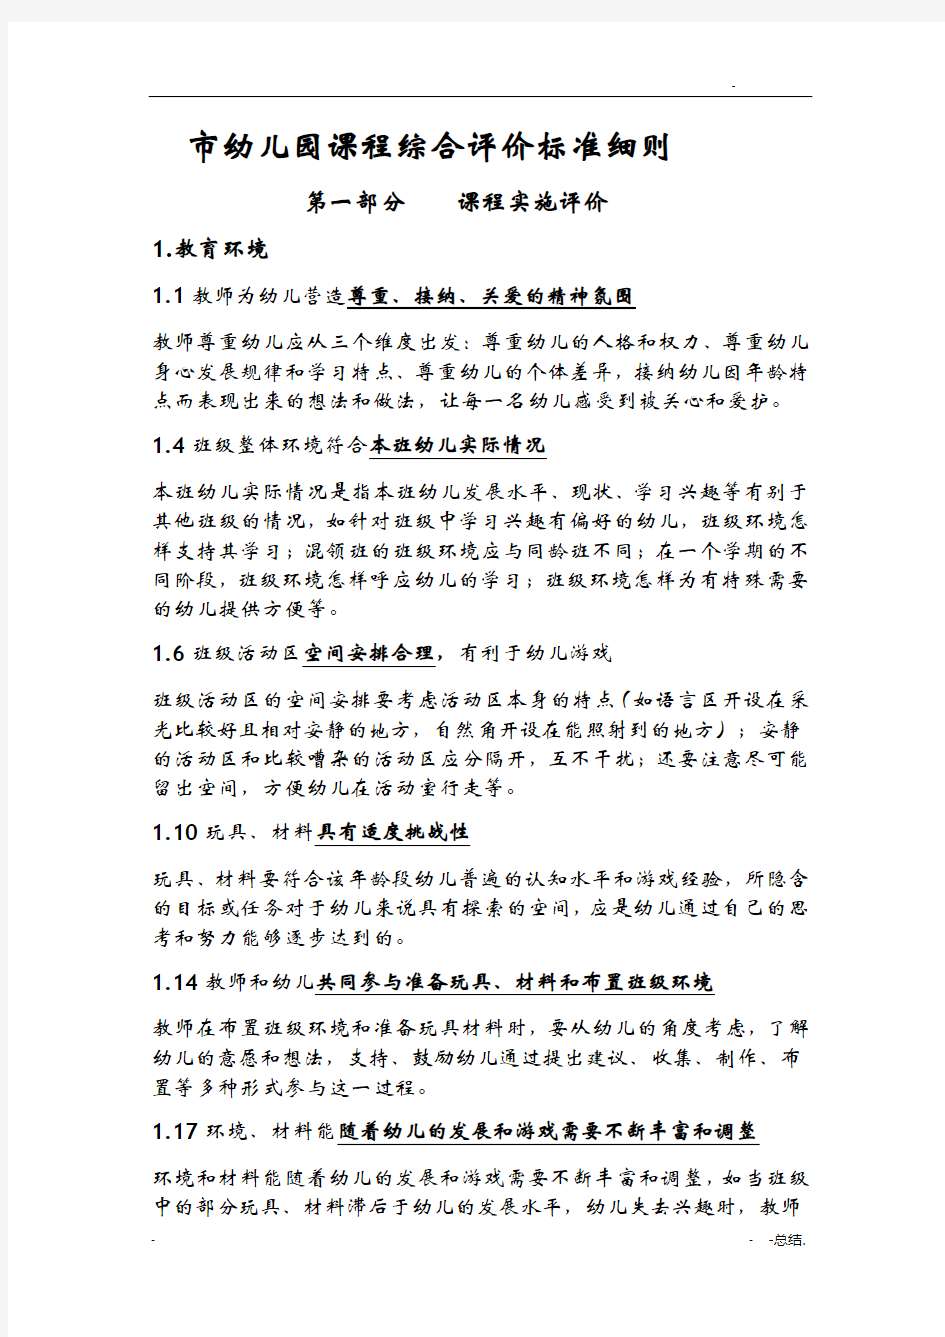 北京市幼儿园课程综合评价标准细则